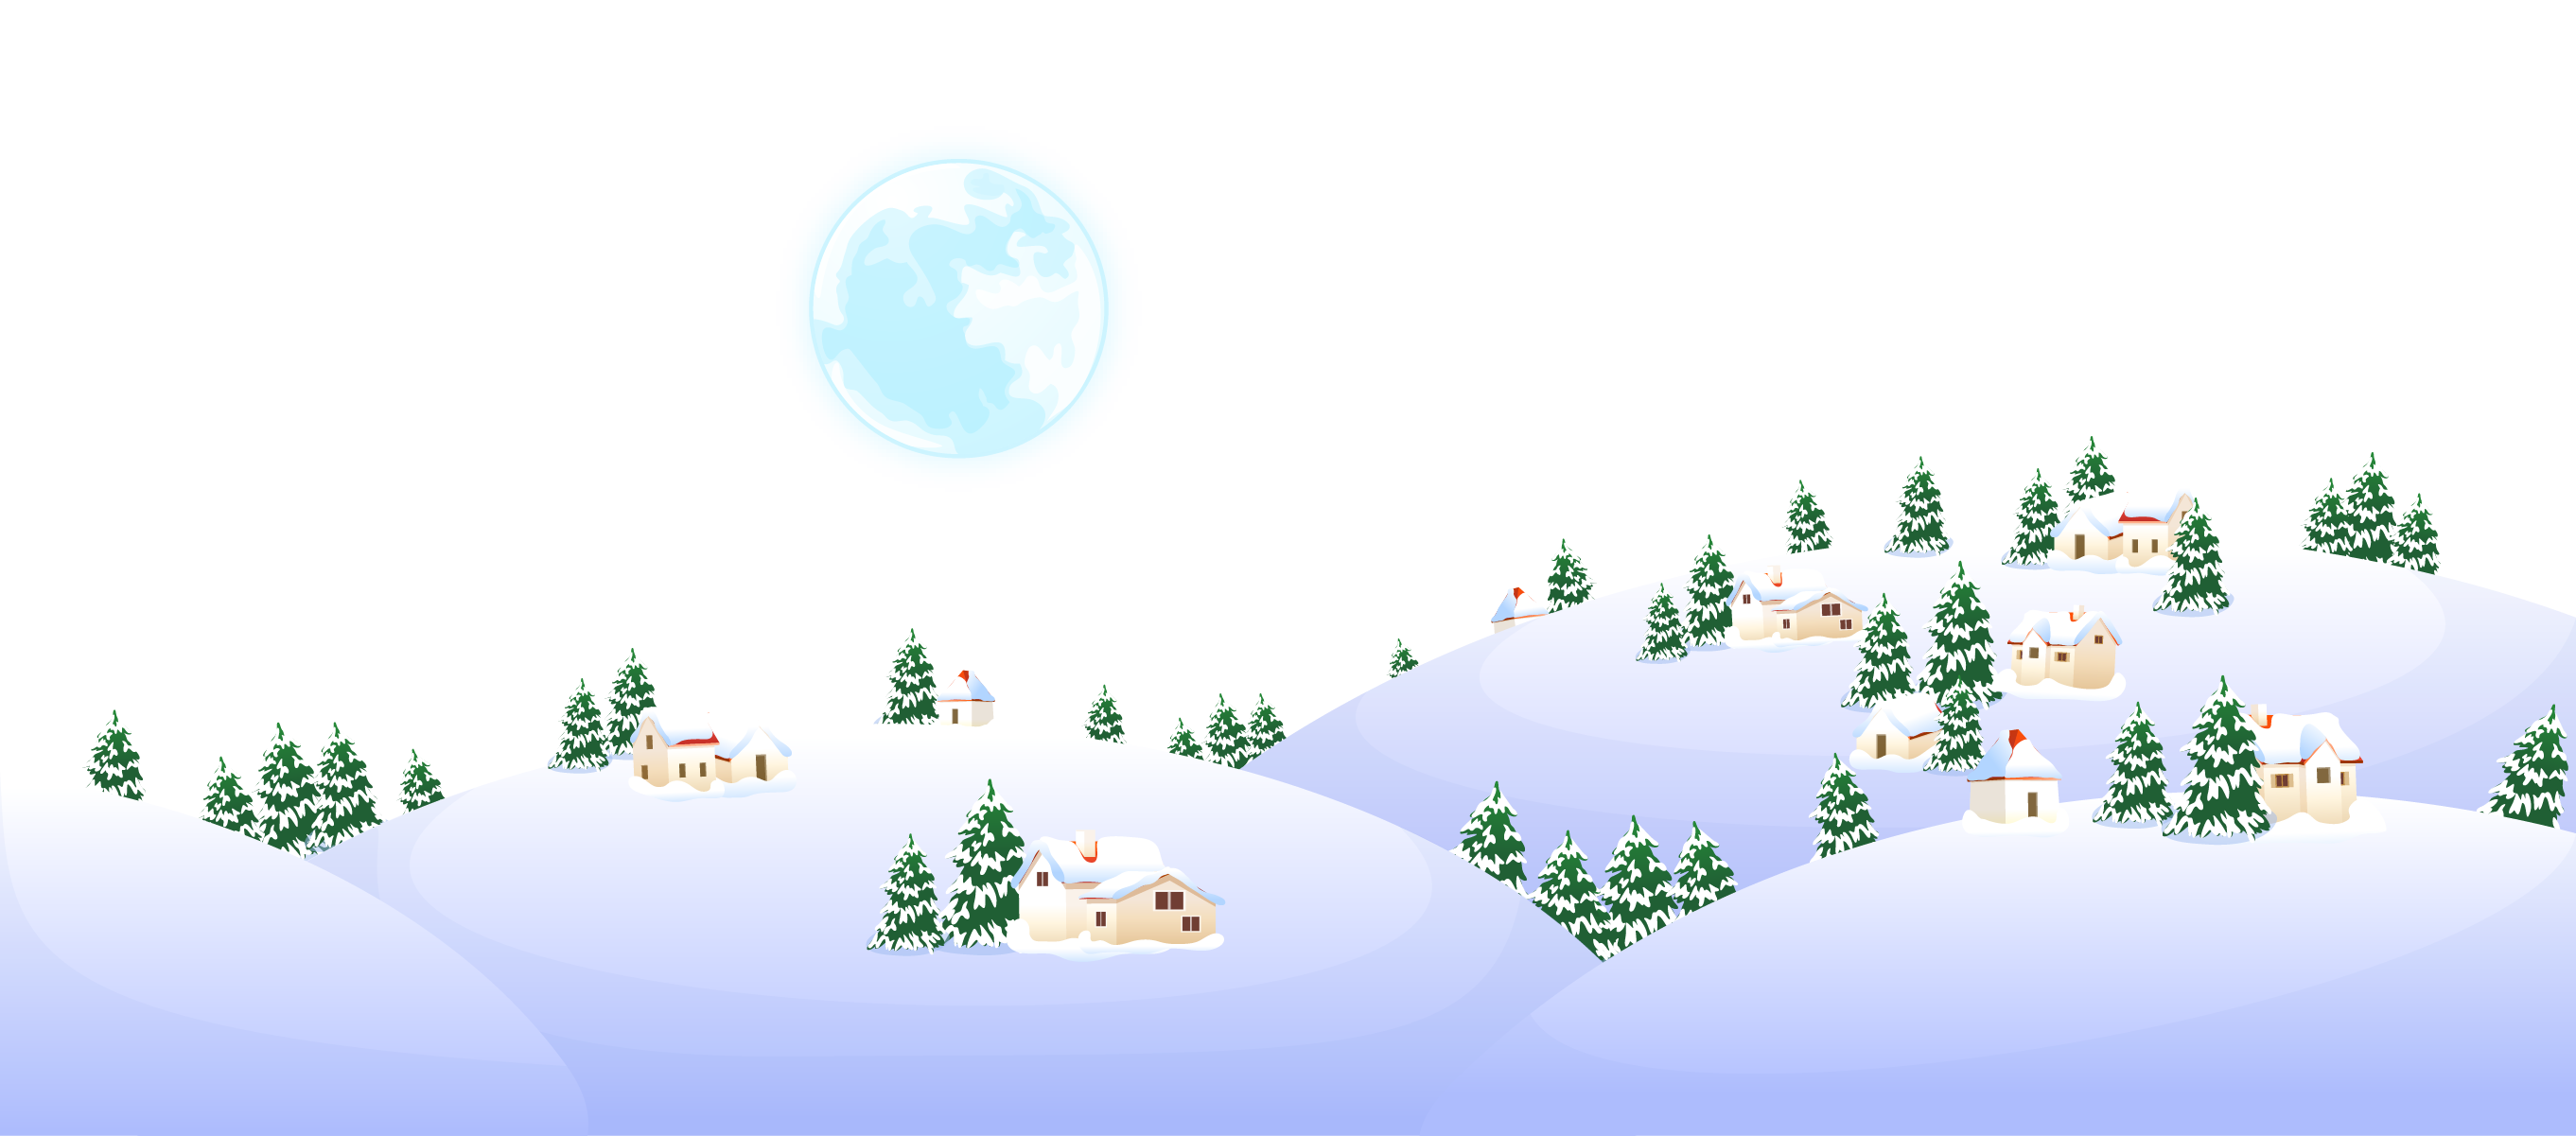 Biểu tượng hoạt hình tuyết miễn phí - Hãy khám phá những biểu tượng hoạt hình tuyết miễn phí đáng yêu và dễ thương nhất tại đây! Chúng tôi tự hào mang đến cho bạn những hình ảnh tuyết hoạt hình đẹp mắt và rực rỡ để làm nổi bật bất kỳ dự án nào của bạn.